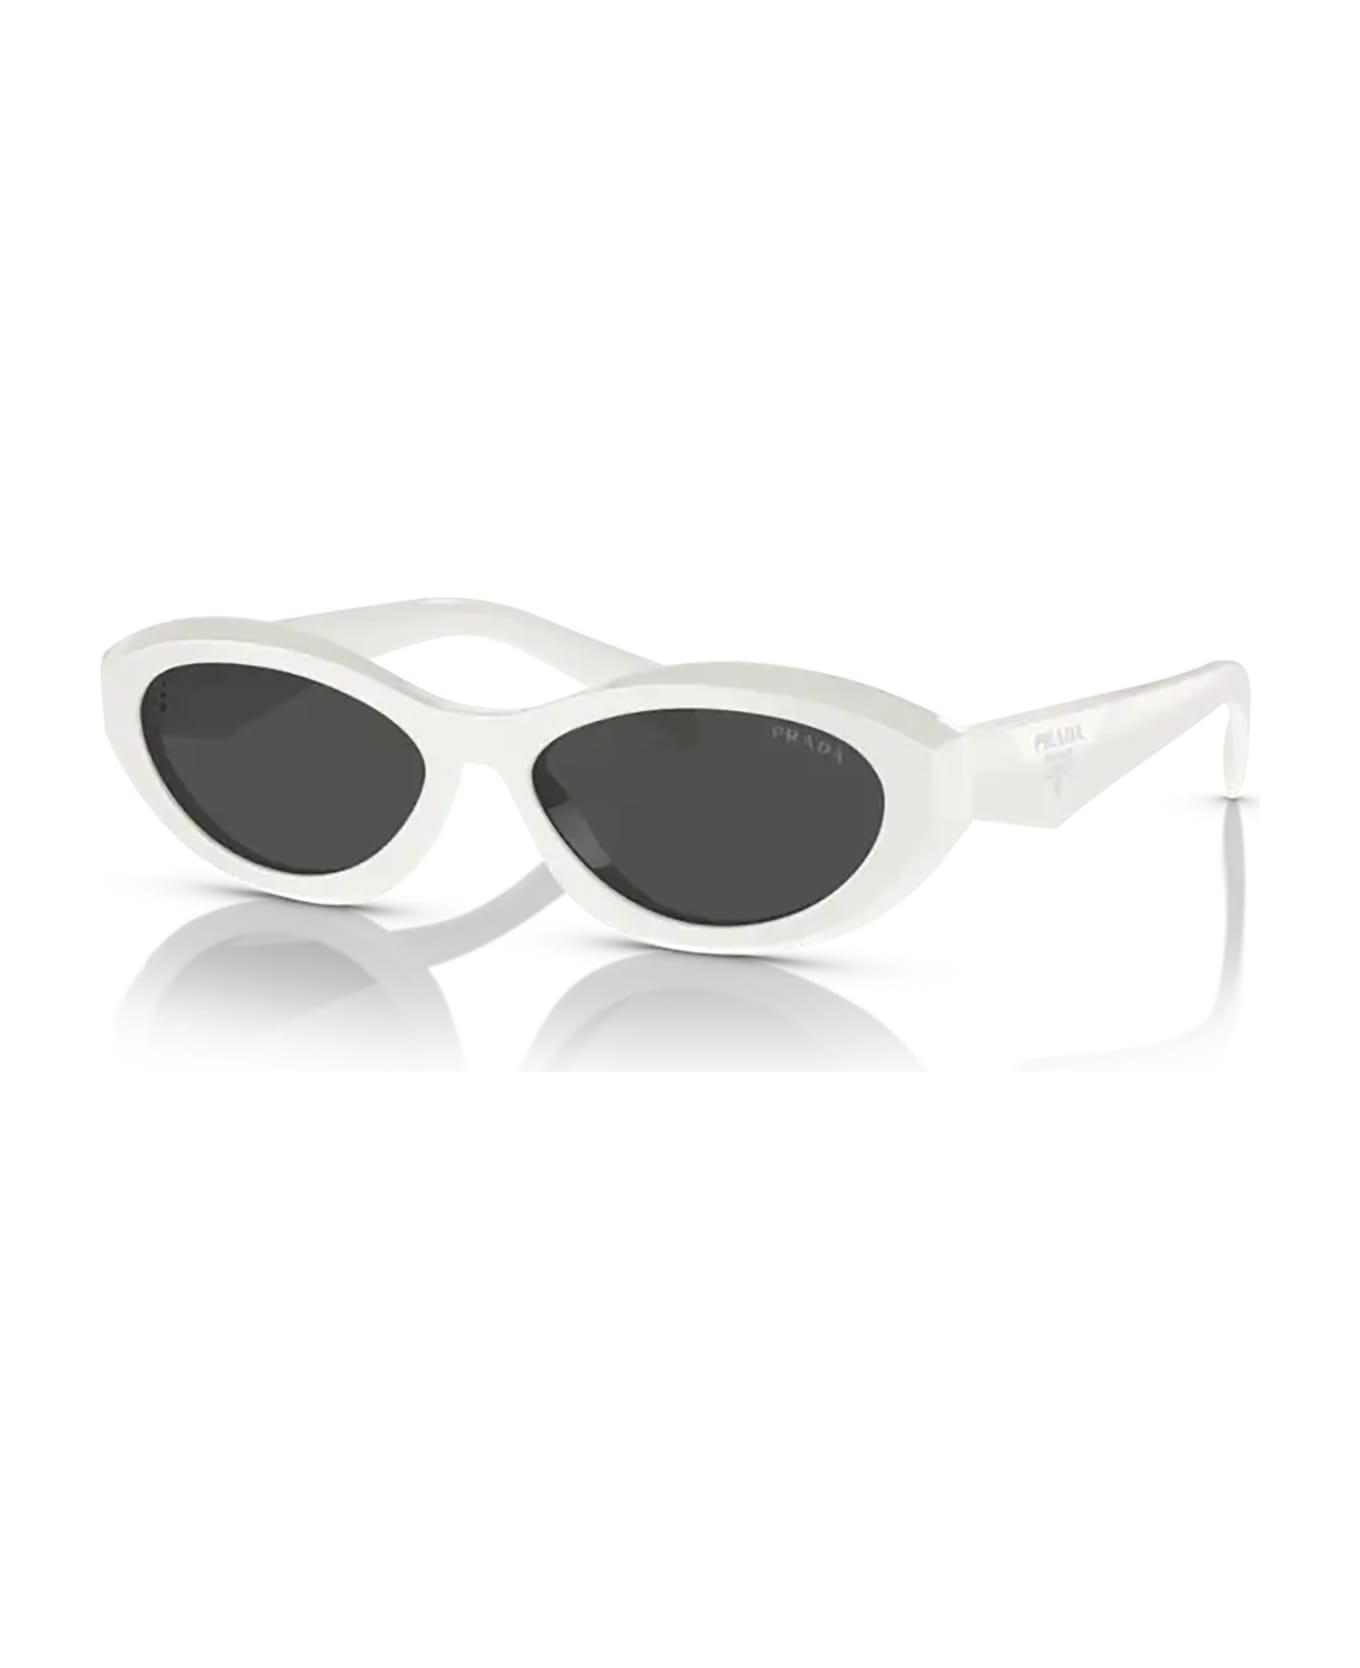 Prada Eyewear Pr 26zs Black / Talc Sunglasses - Black / Talc